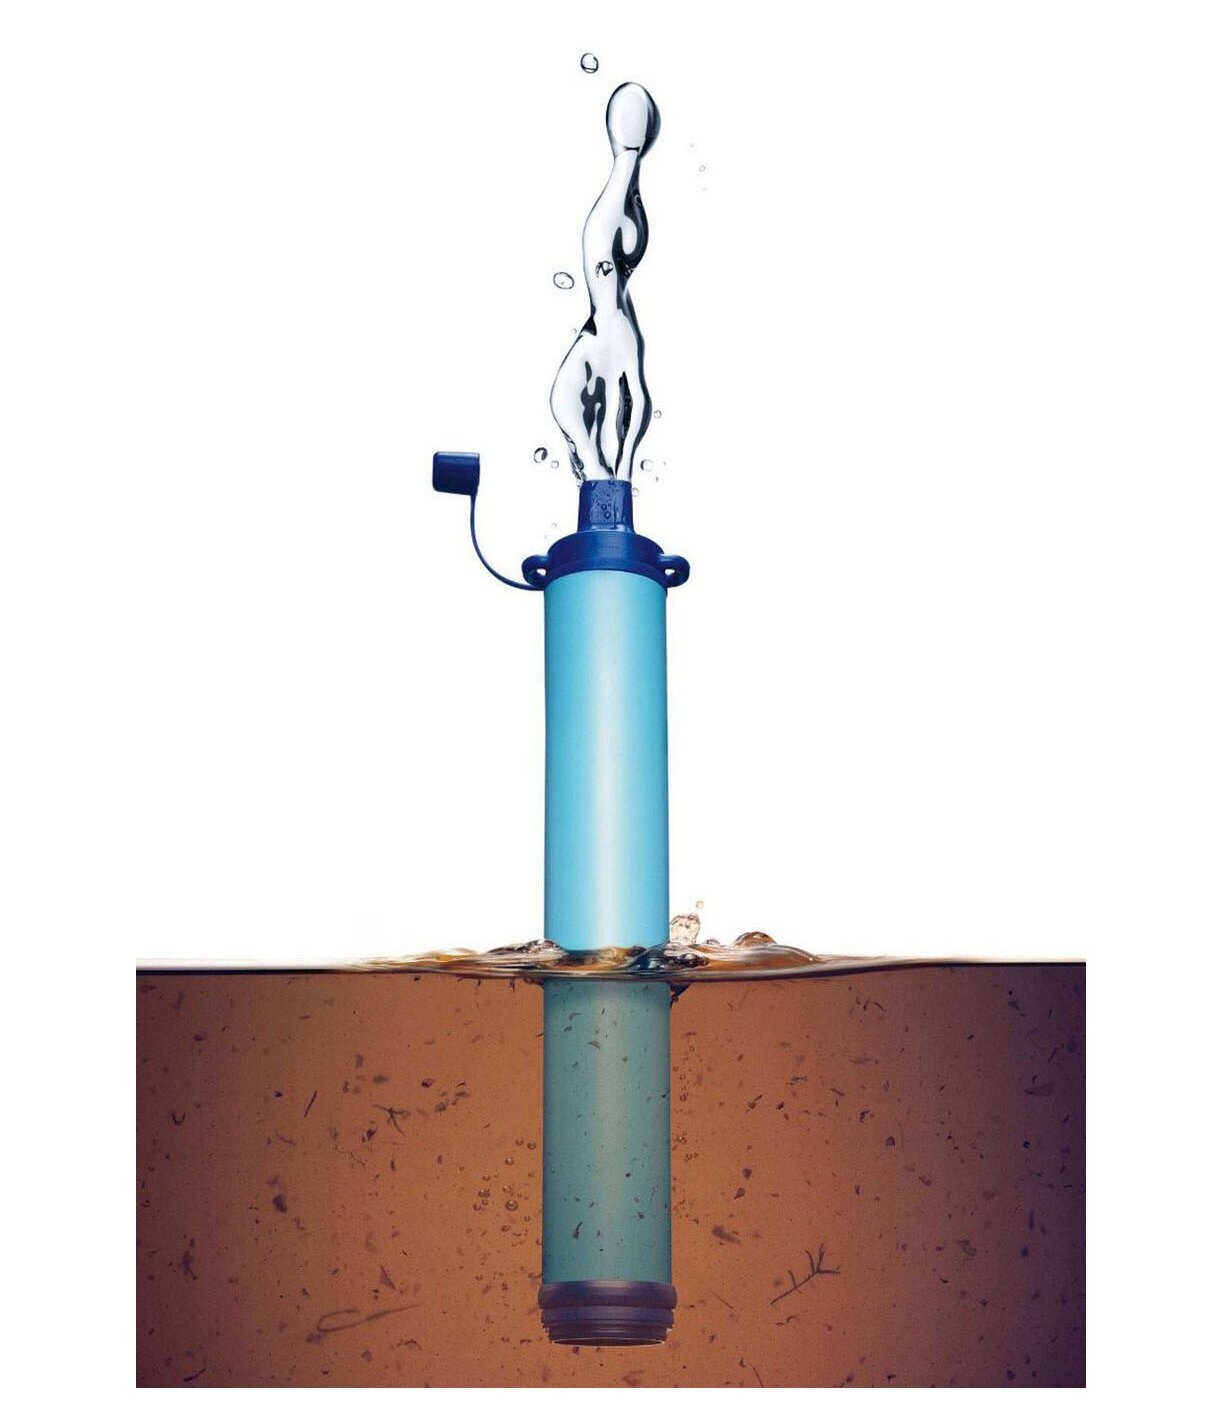 Фильтр-трубочка, реплика LifeStraw/очистка воды/питьевая вода/походный фильтр/от бактерий/без примесей/переносной/на природу/компактный/карманный